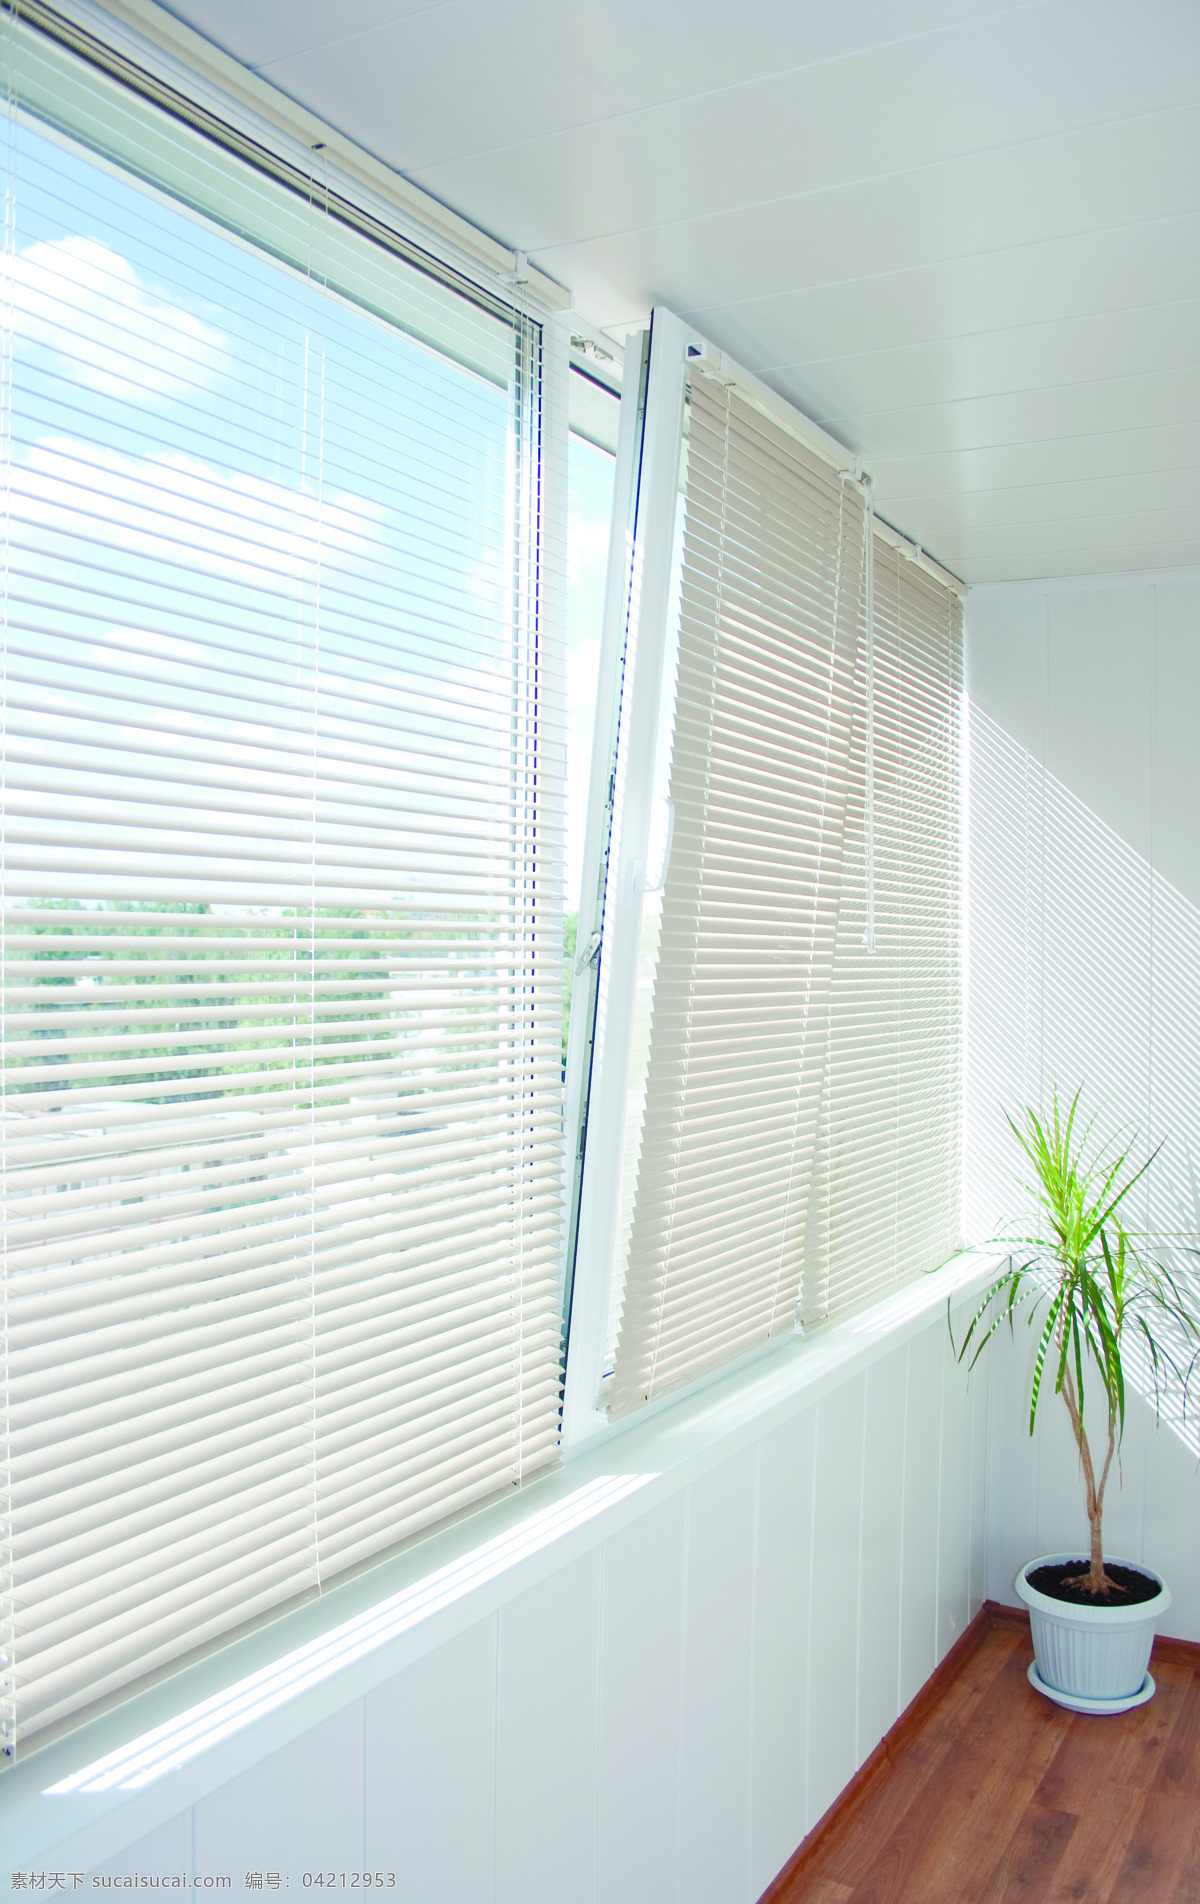 室内 百叶窗 客厅 窗户 窗口 地板 花 盆景 室内设计 环境家居 白色